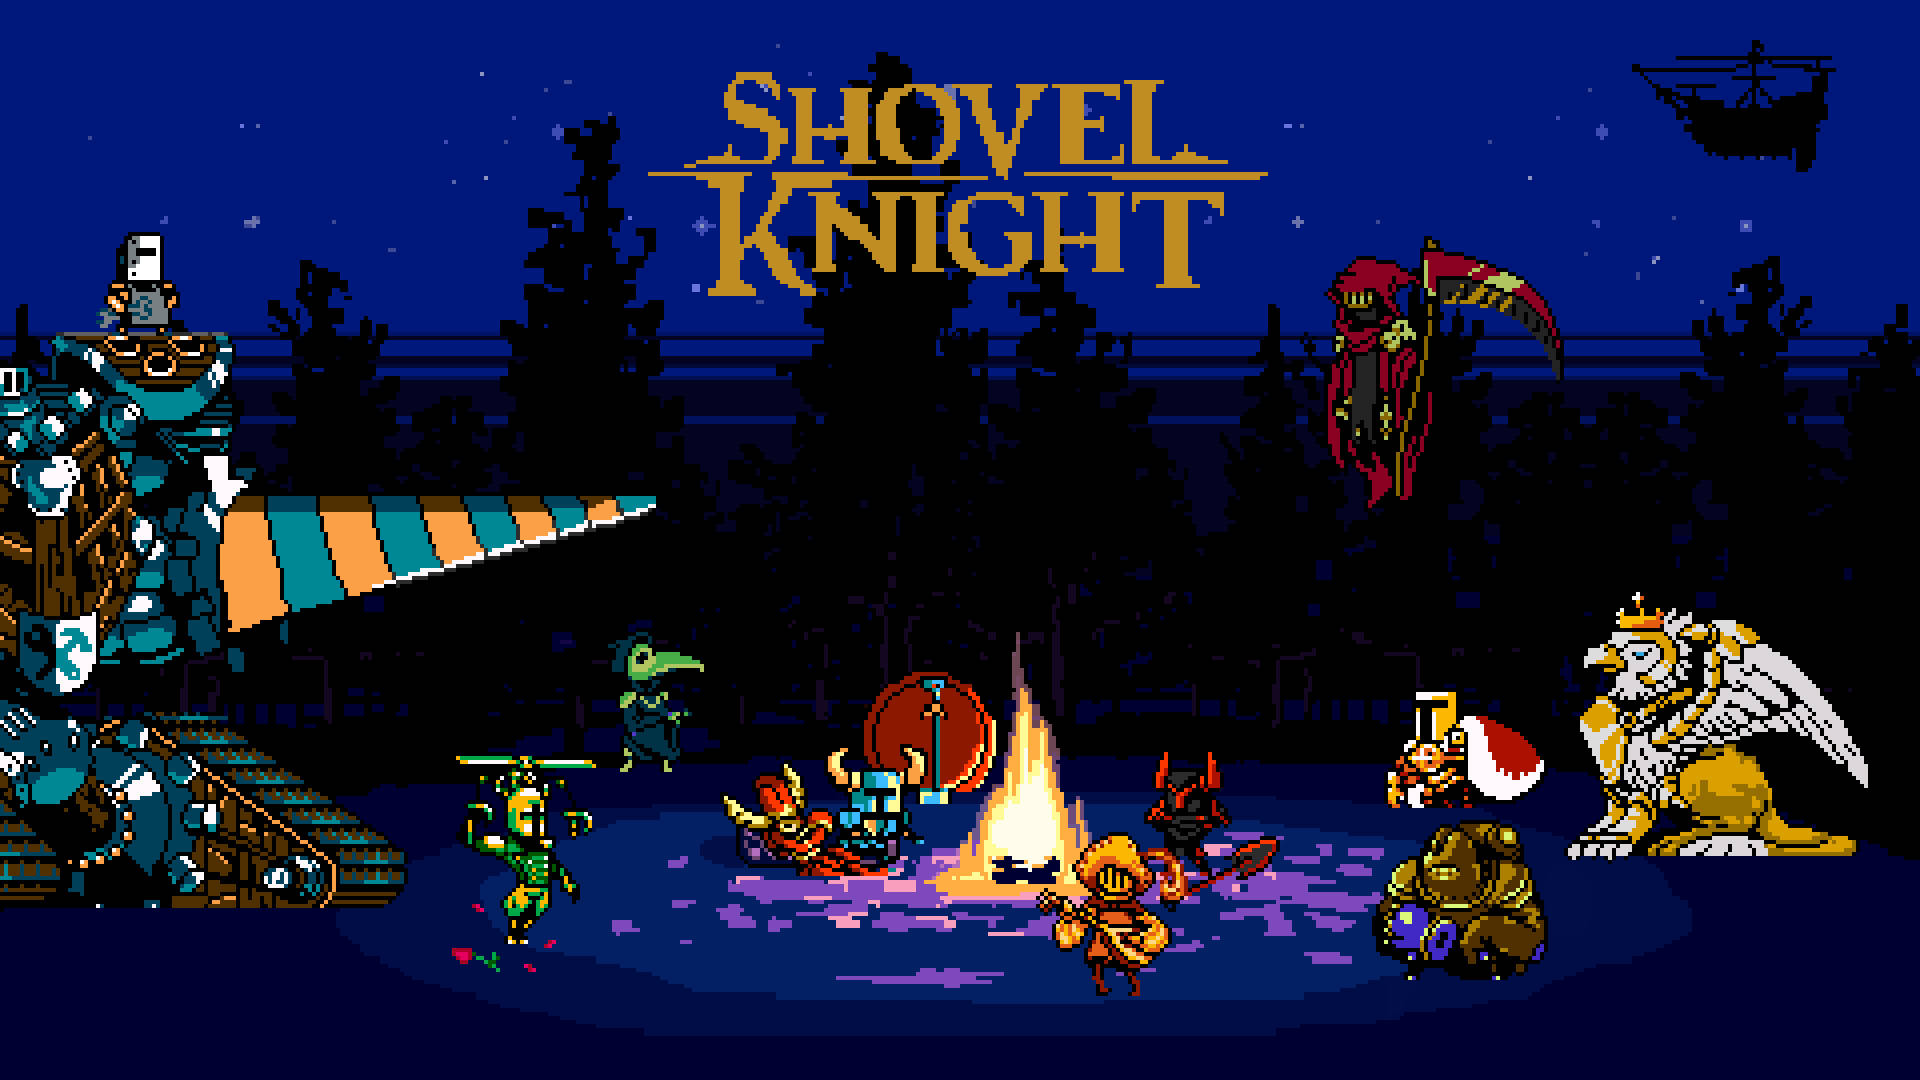 Shovel Knight Pixelkunst Im Retro-stil Wallpaper